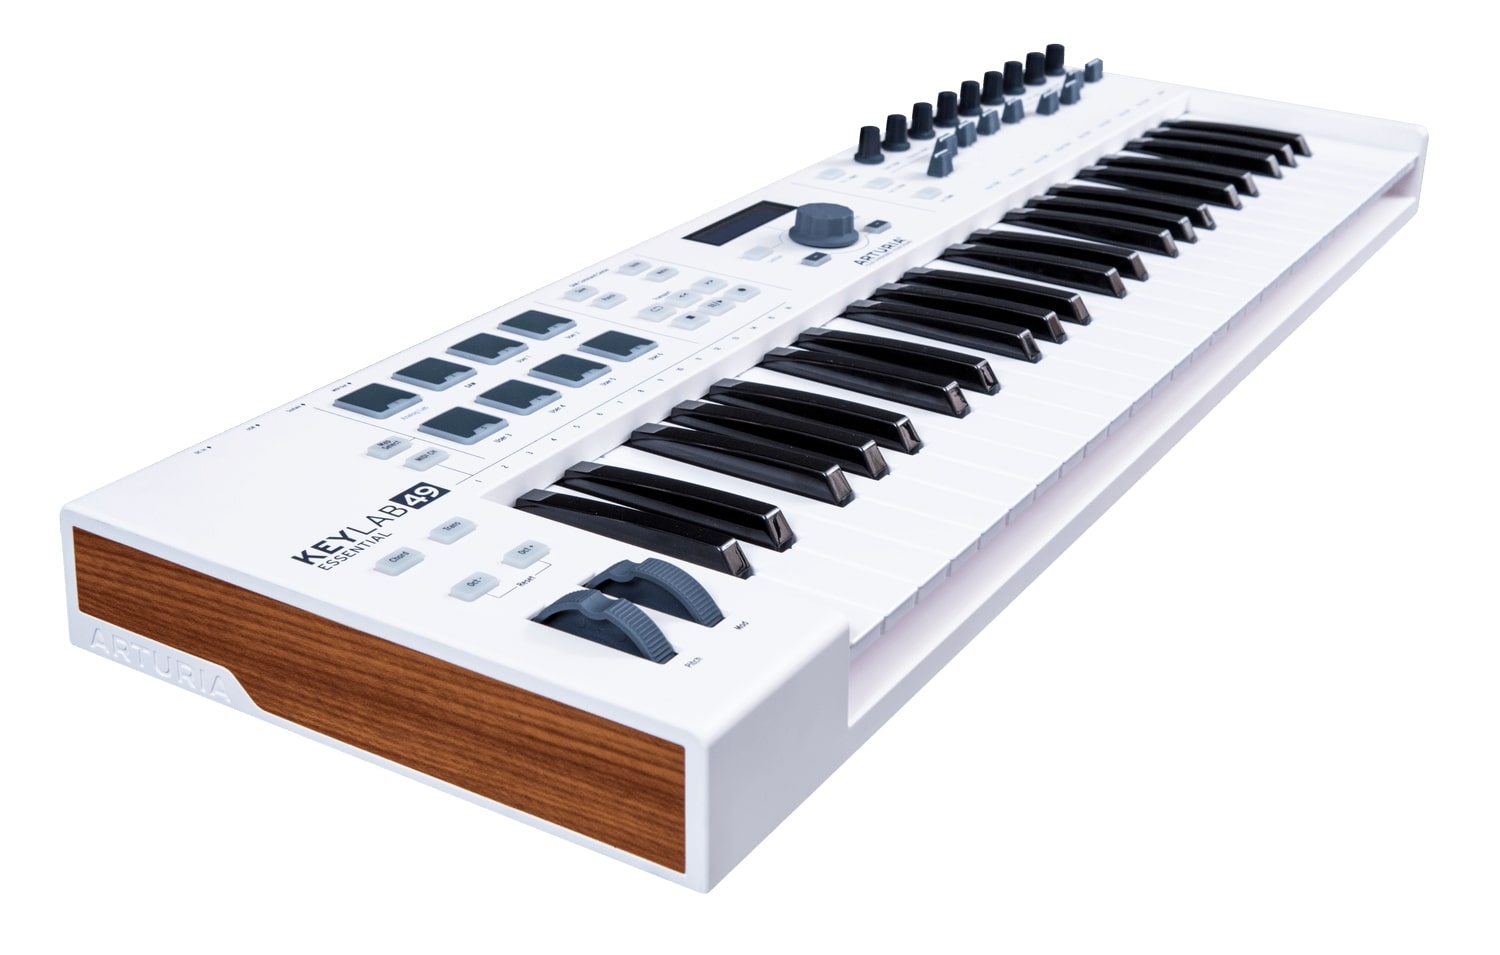 Arturia KeyLab Essential 49 Semi-Weighted USB MIDI Controller Keyboard